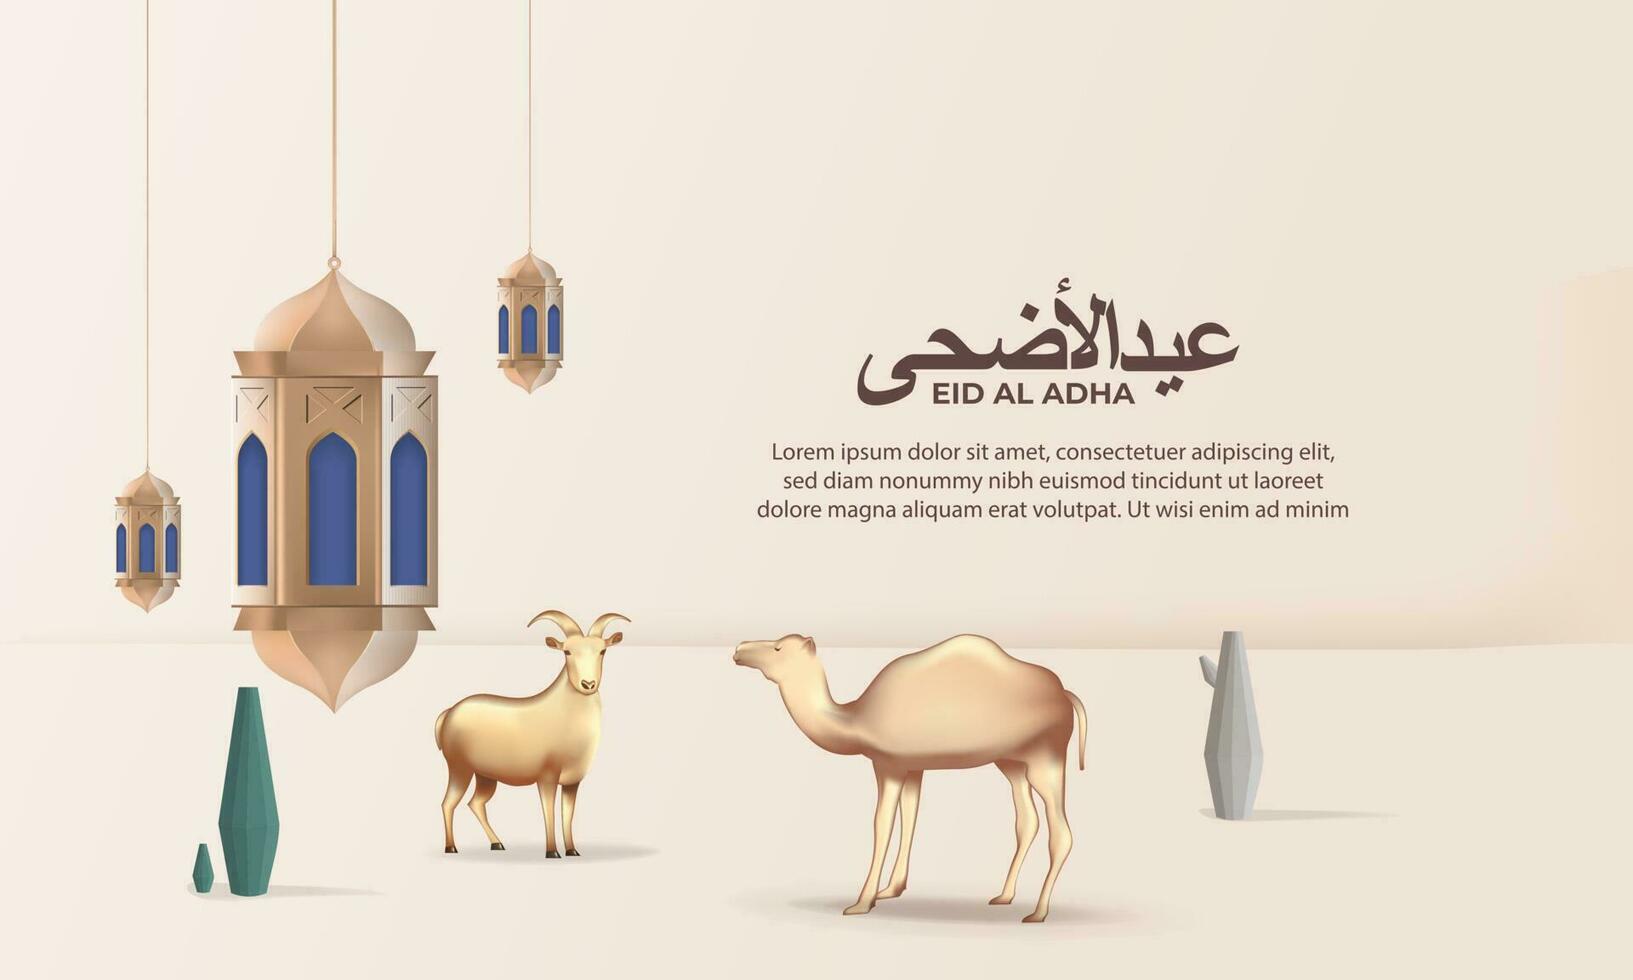 eid al adha achtergrond met geit, kameel voor poster, banier ontwerp. vector illustratie